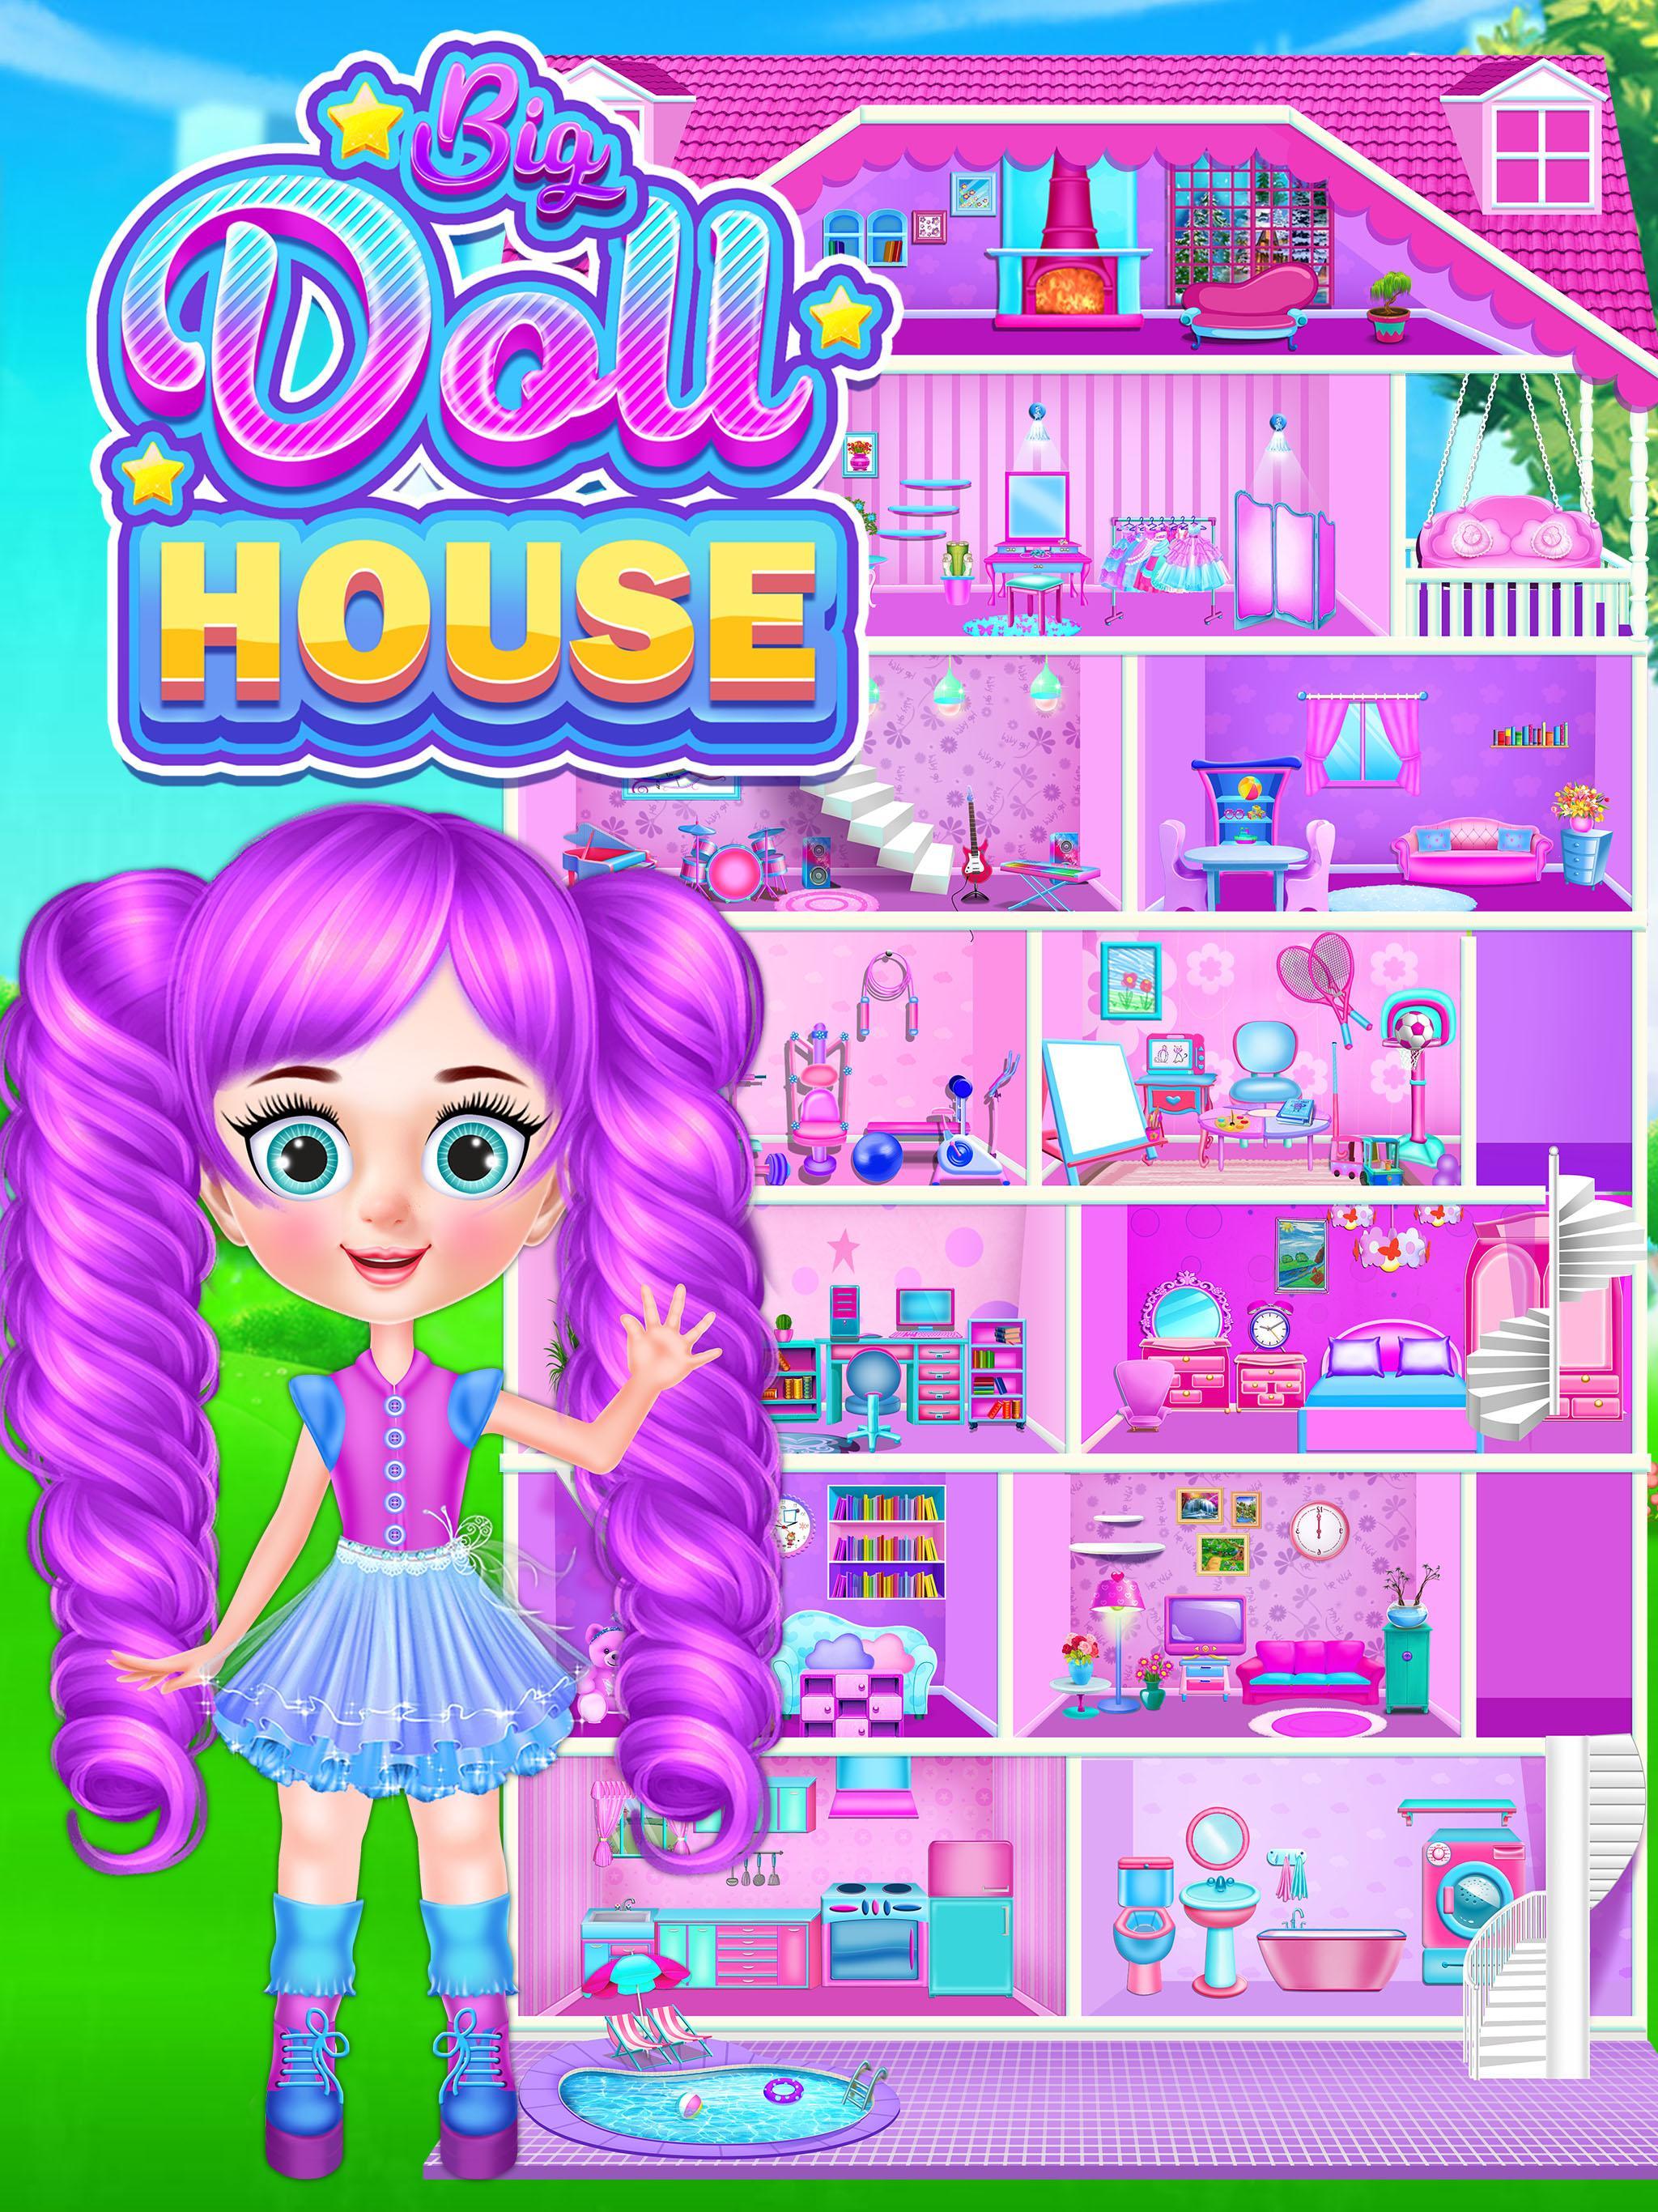 Игра дом кукол. Игры для девочек дом. Игры для девочек в домашних условиях. Girl House игра. Vivaland Dream House игра.